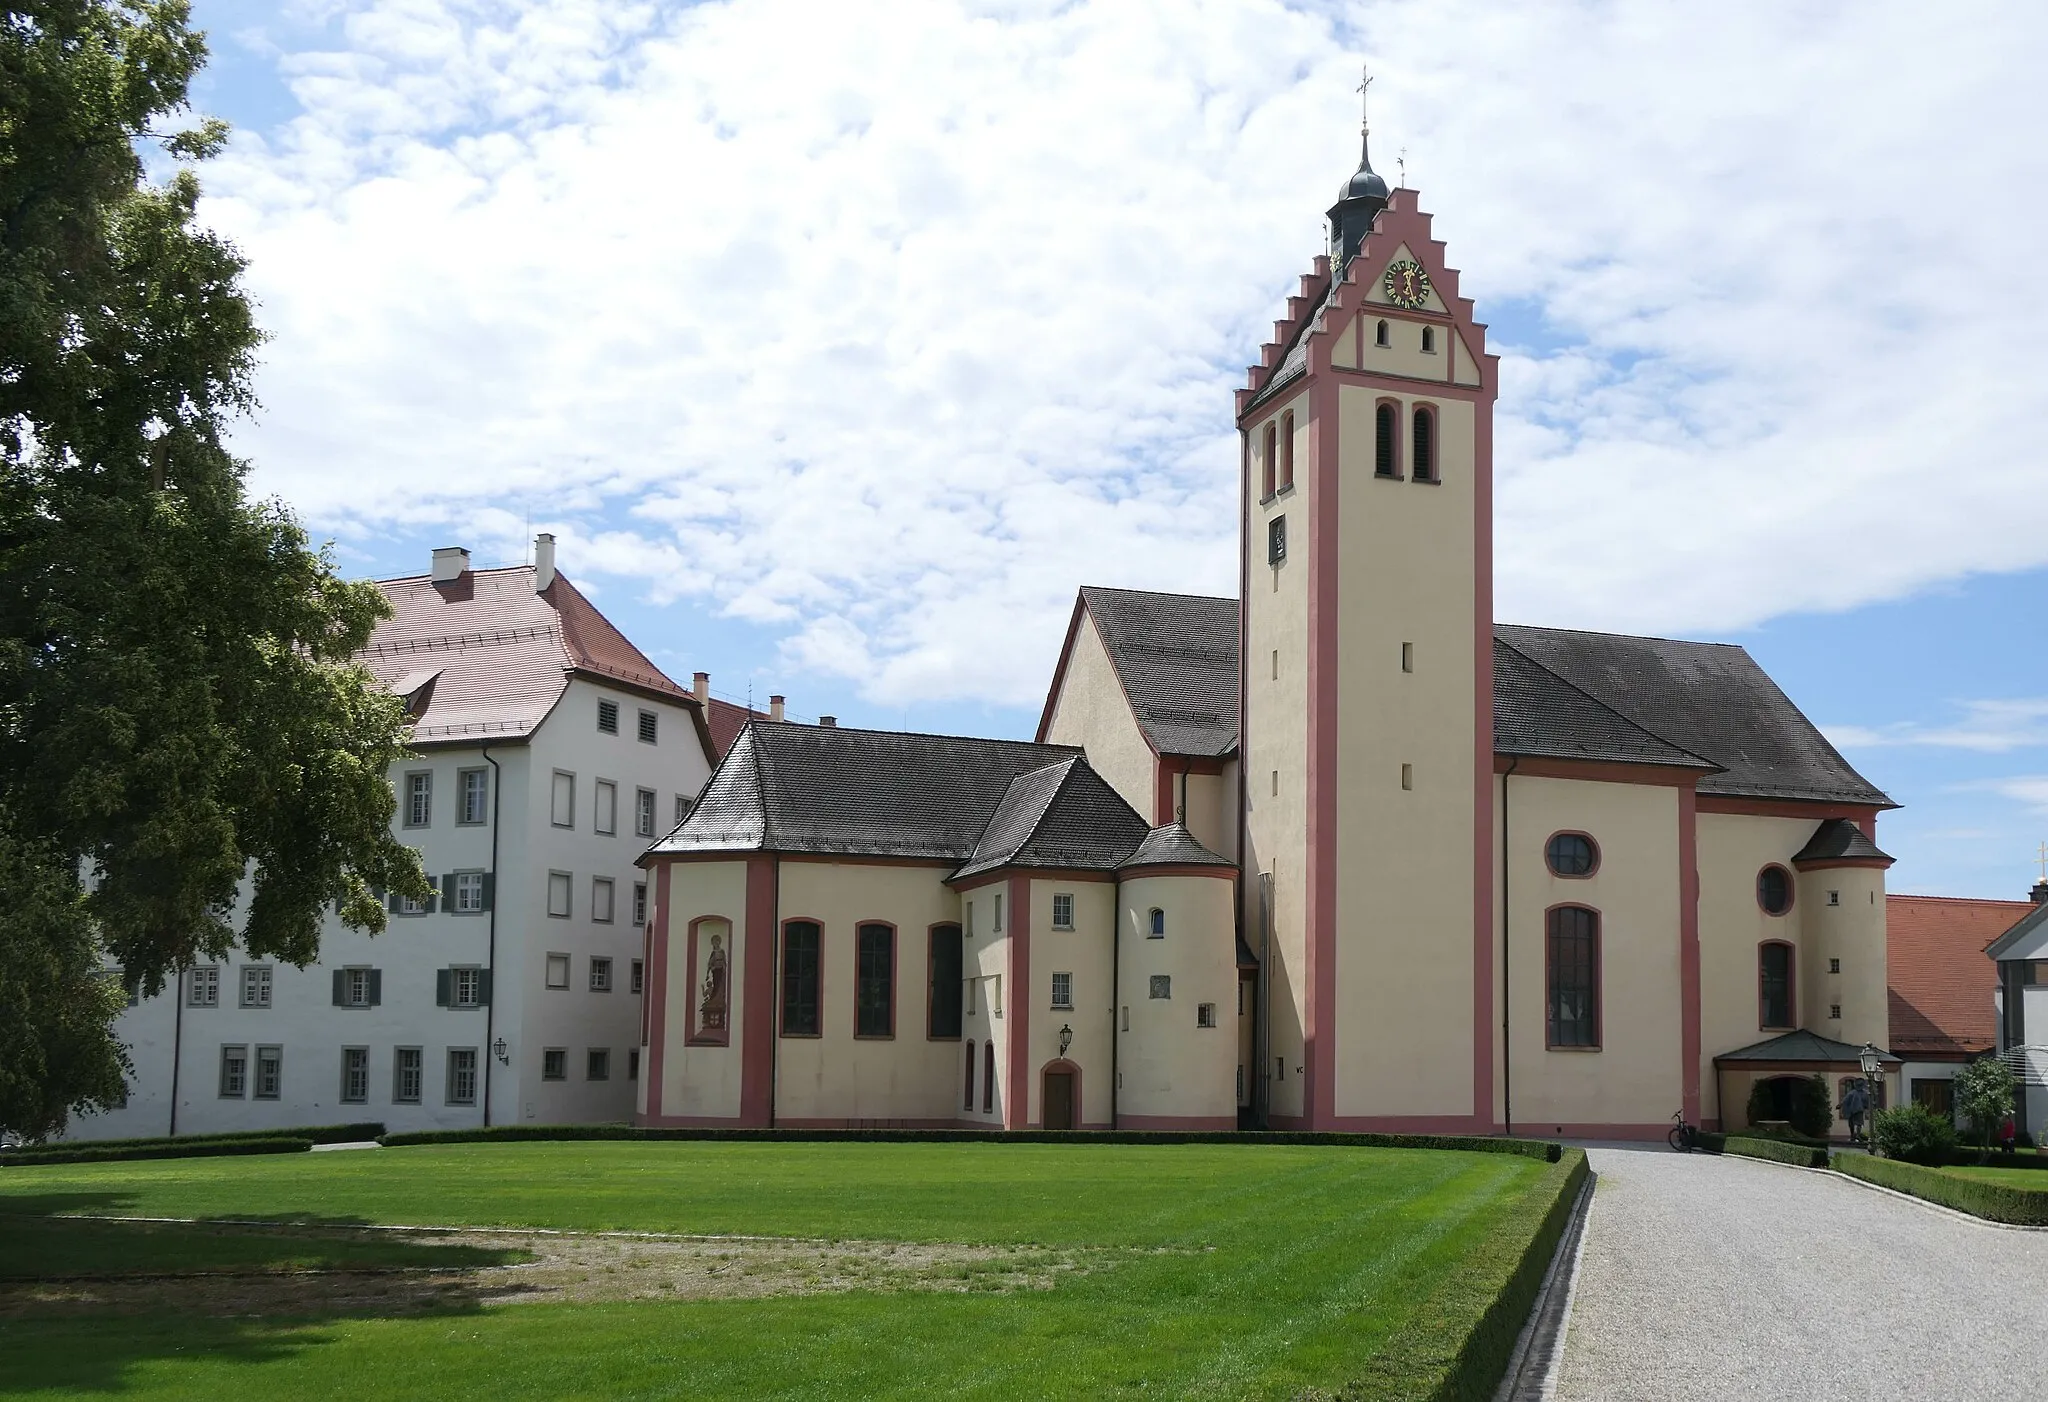 Kuva kohteesta Tübingen